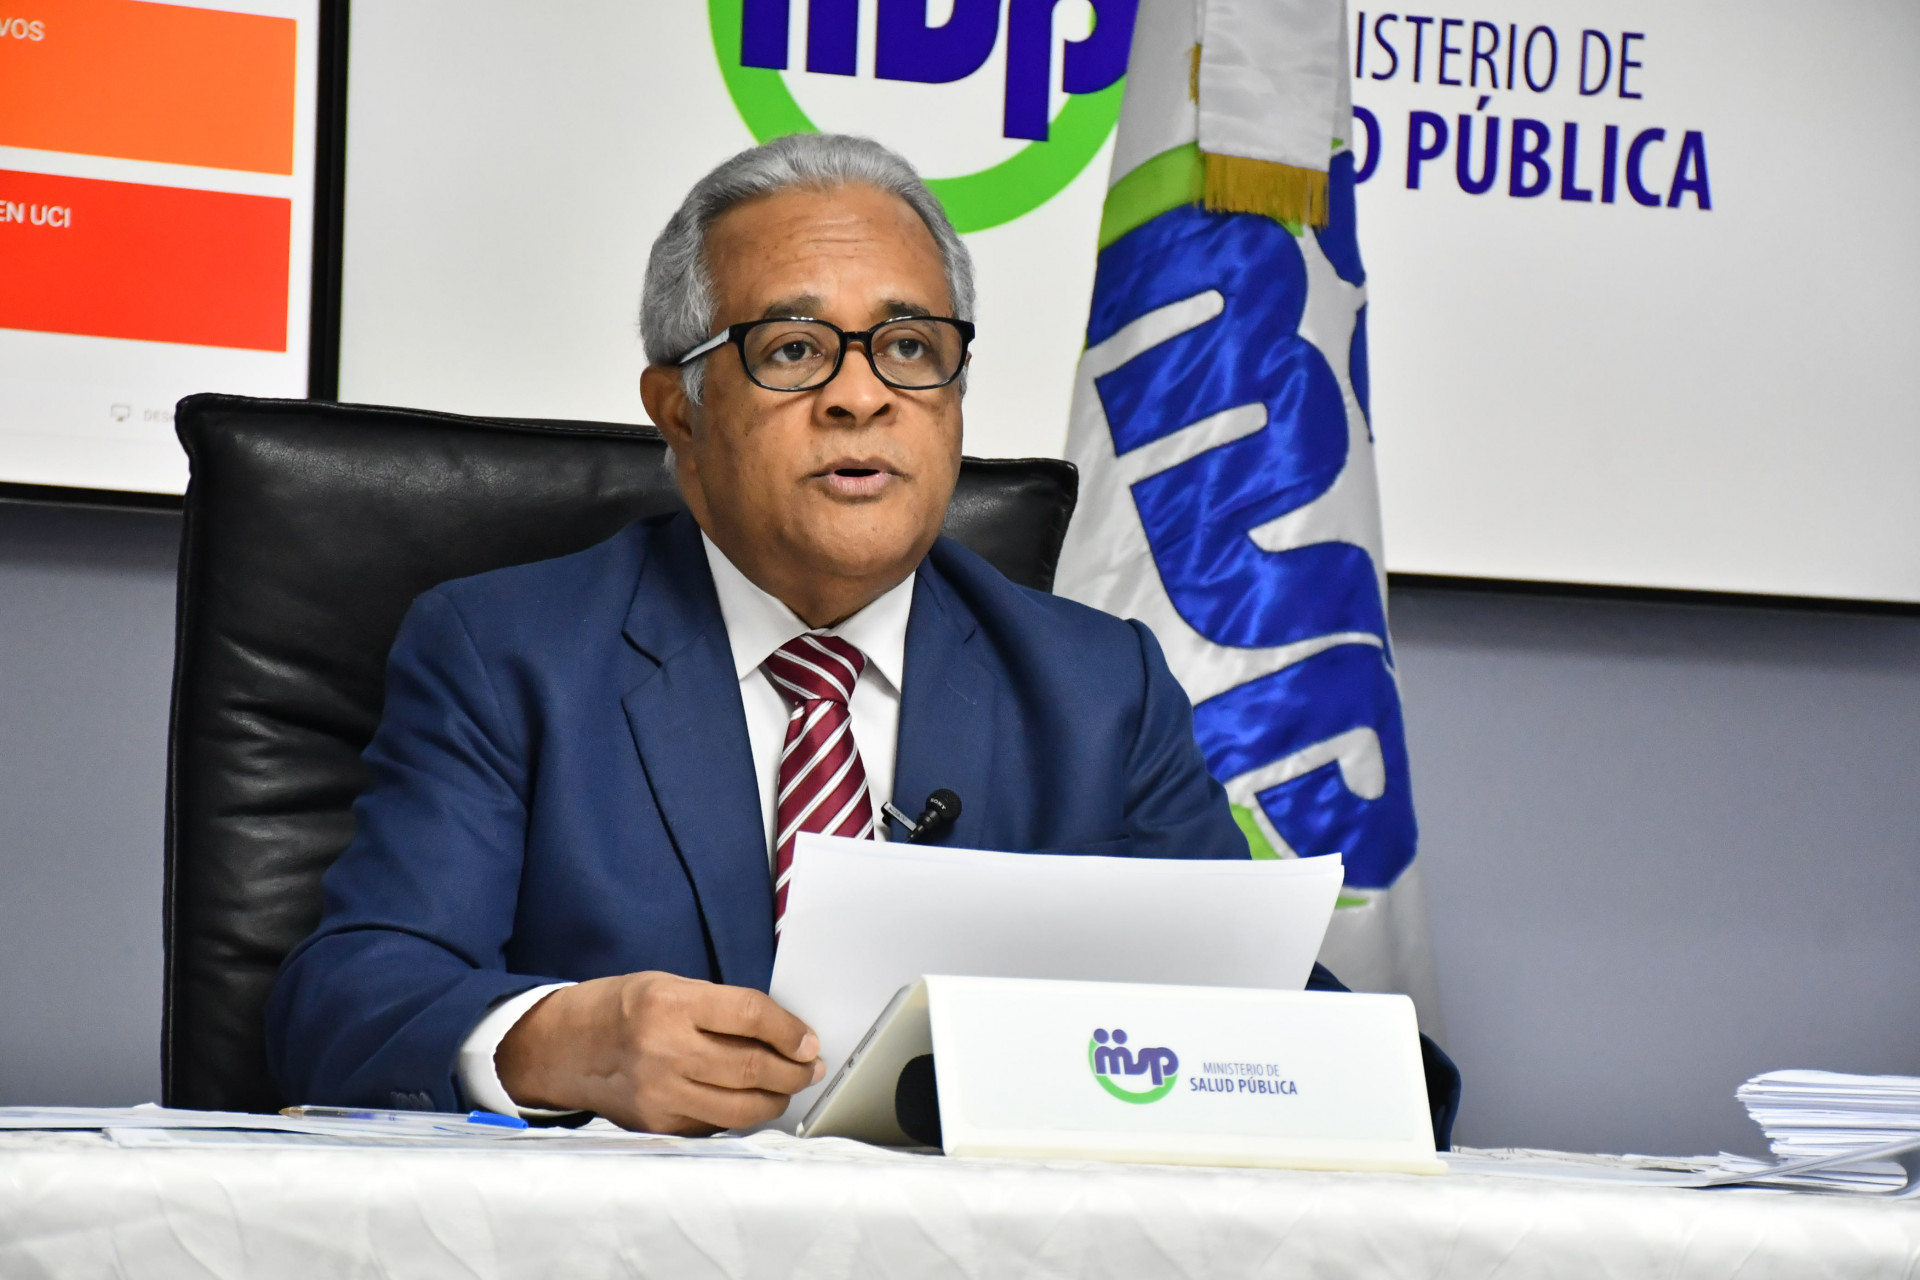 REPÚBLICA DOMINICANA: Ministro de Salud anuncia nuevo sistema citas, por vía telefónica o Aurora MSP, para realización pruebas PCR con mayor rapidez y eficiencia